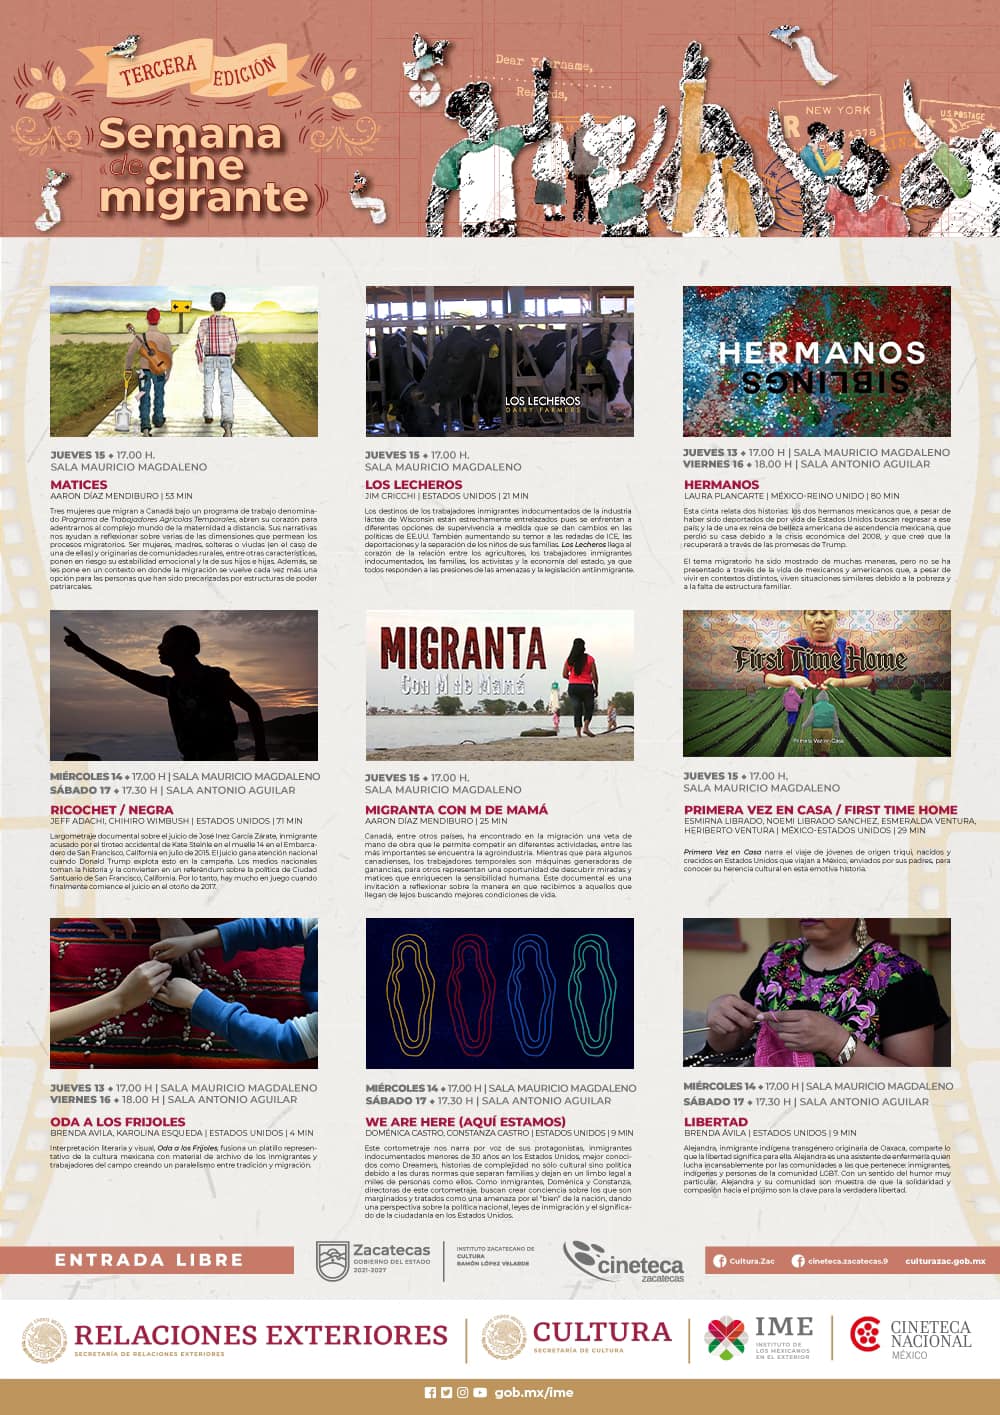 Invitan a Semana de Cine Migrante en la Cineteca de Zacatecas